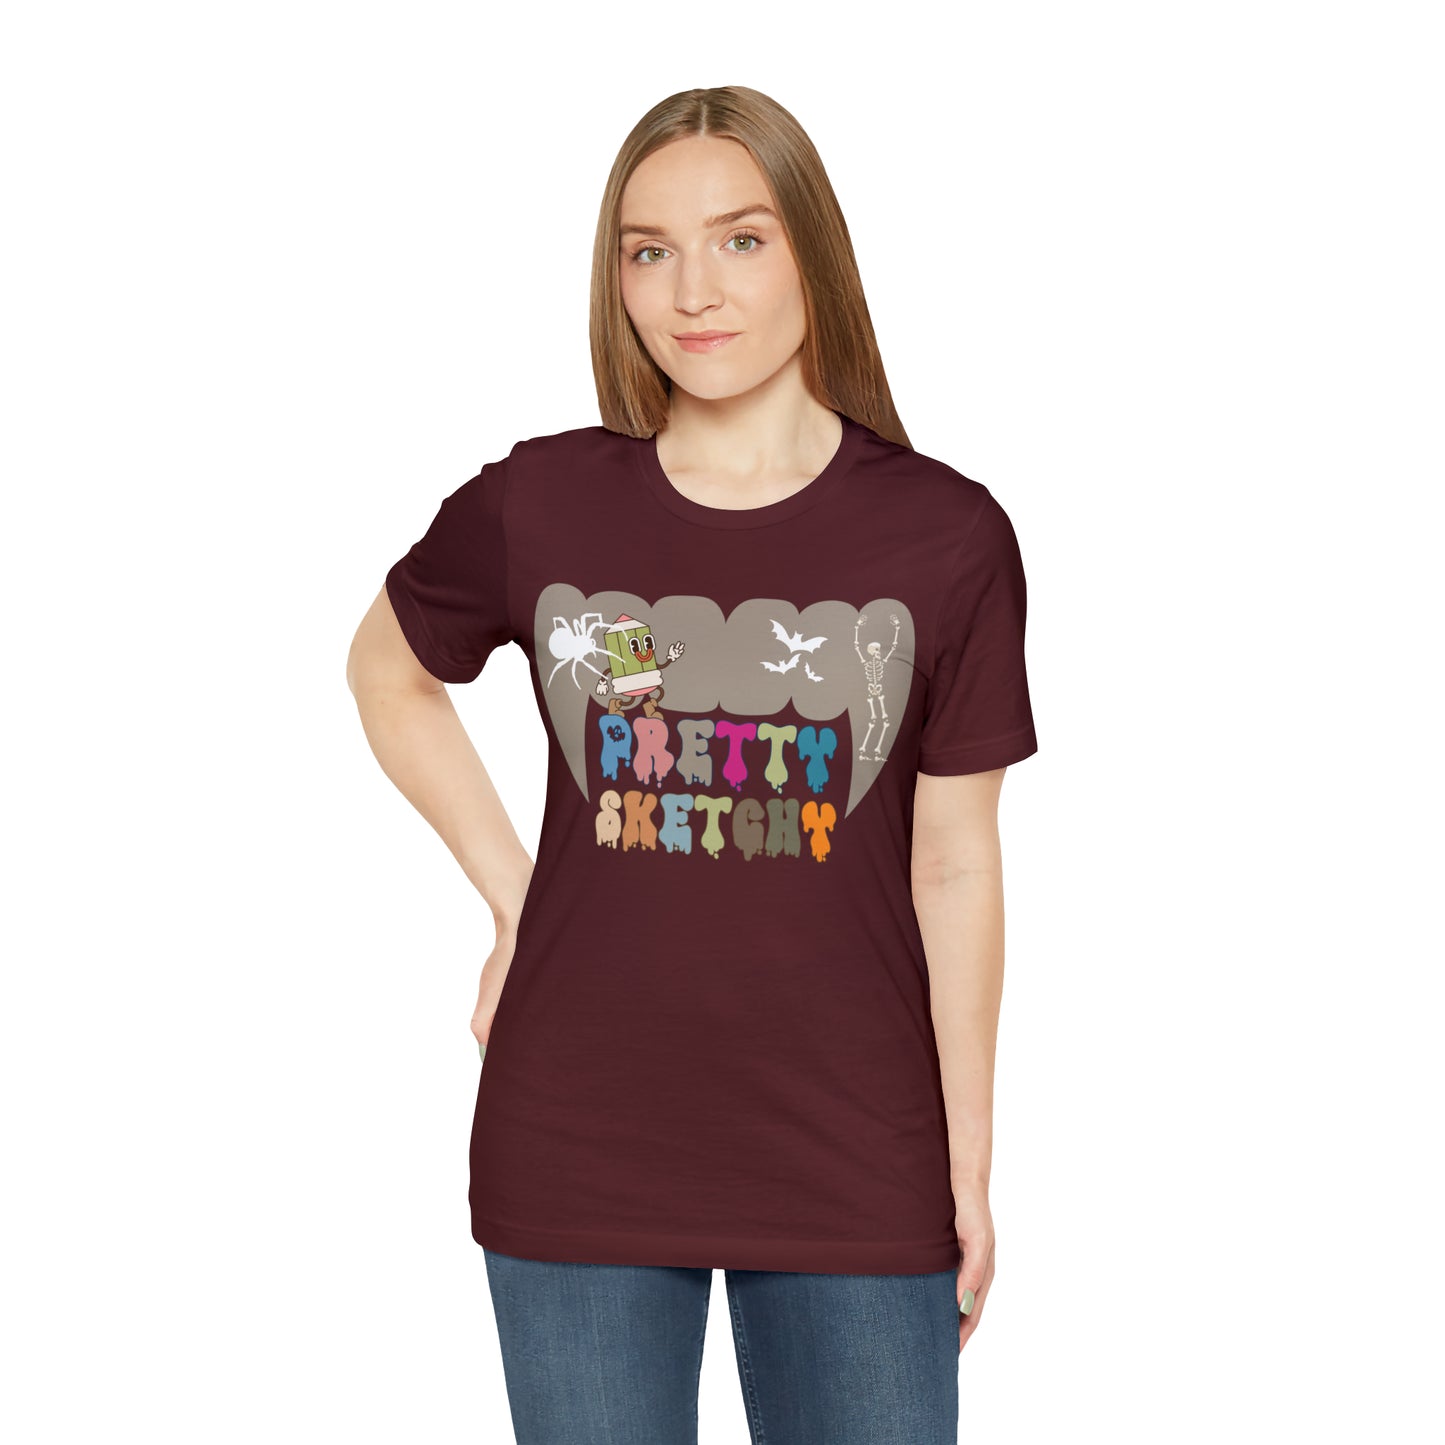 Art Teacher Shirt, Art Lover Gift, Pretty Sketchy Shirt for Halloween Gift , Art Lover Shirt, Gift For Teacher, T310